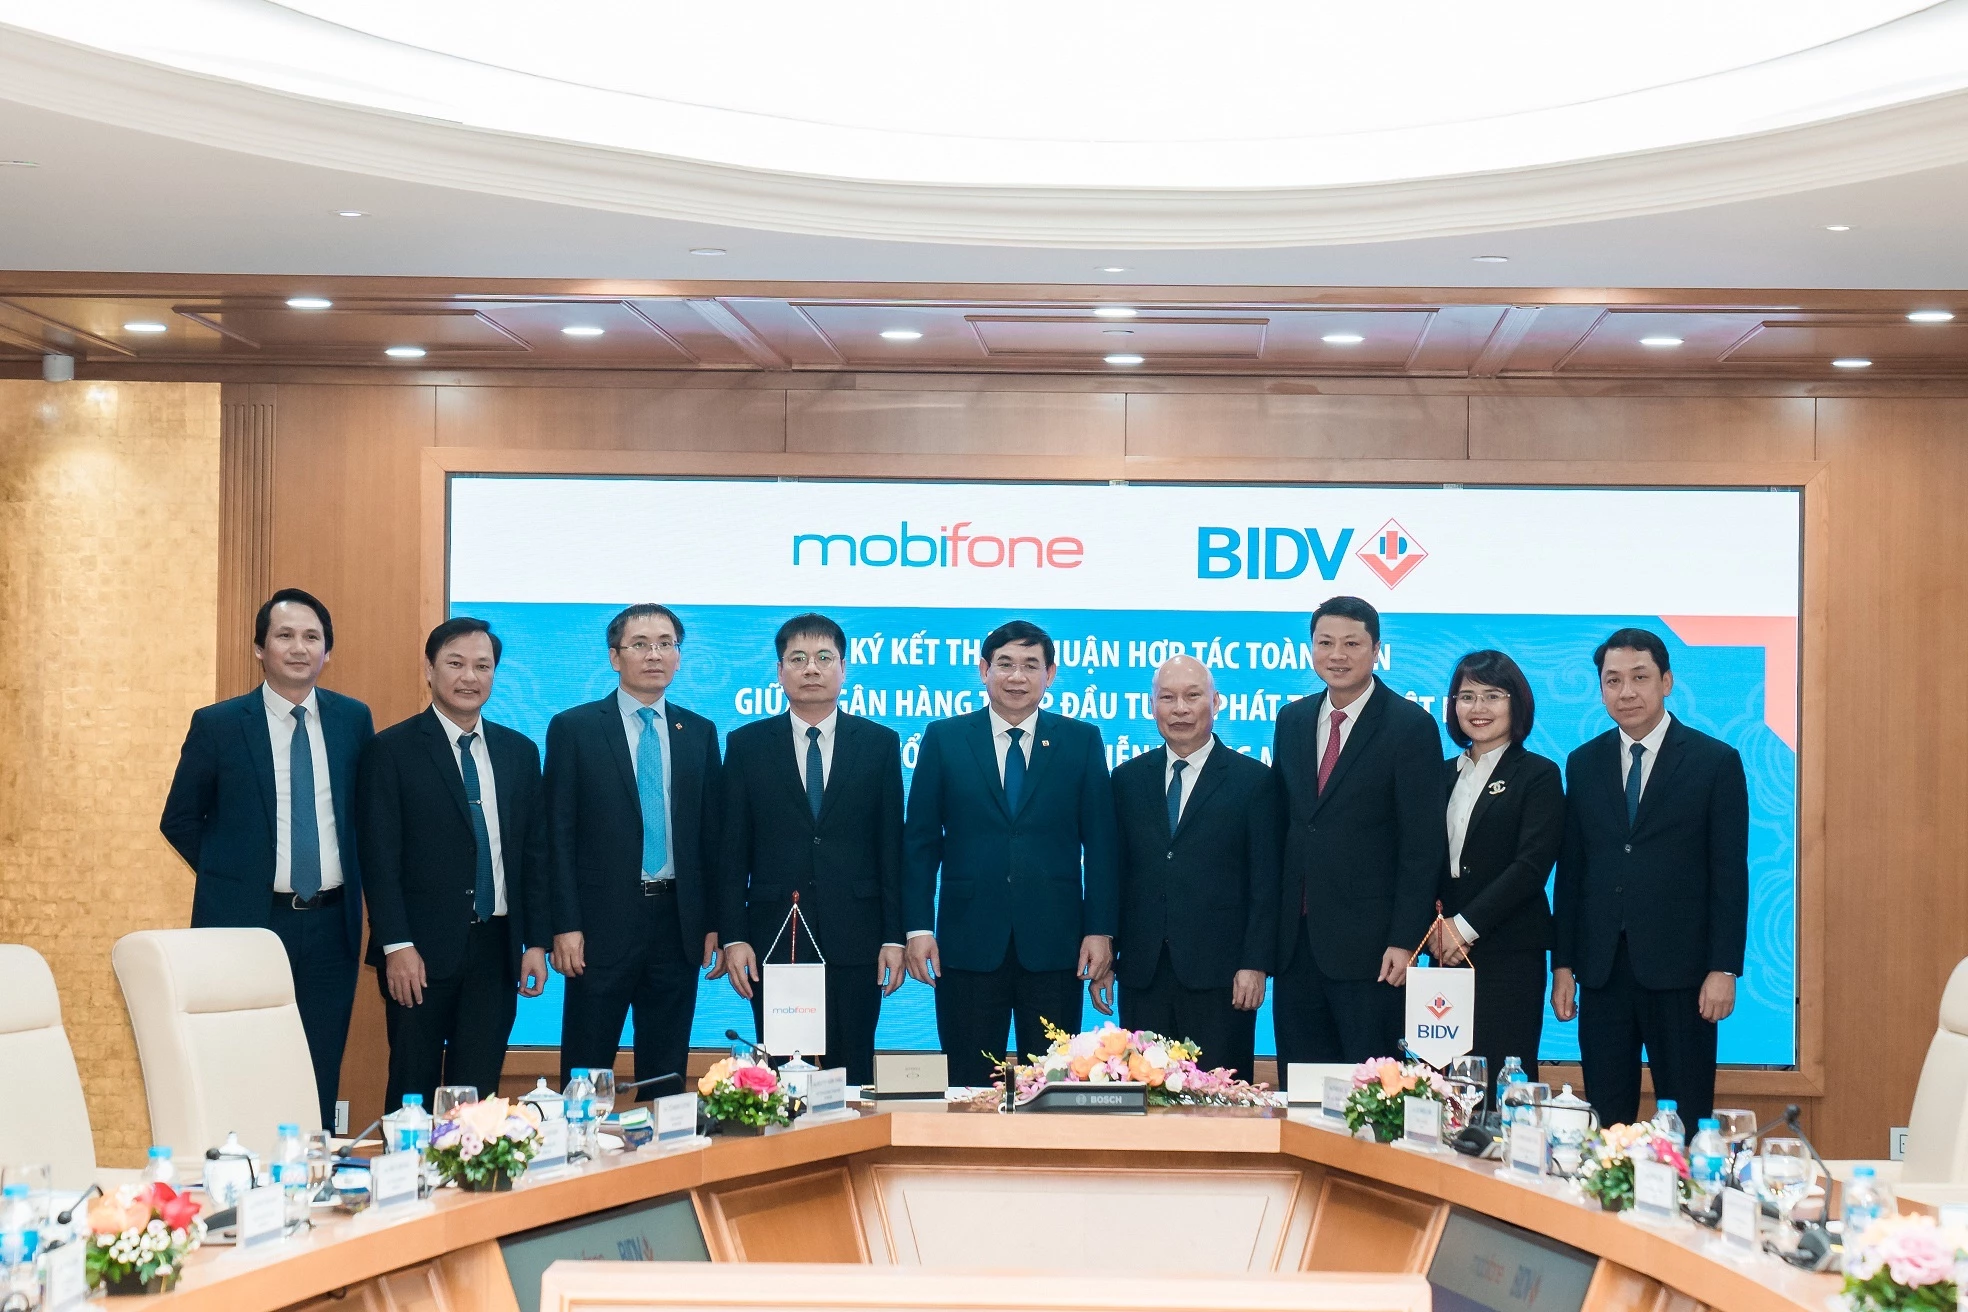 Mobifone và BIDV ký kết thoả thuận hợp tác toàn diện giai đoạn 2021-2026